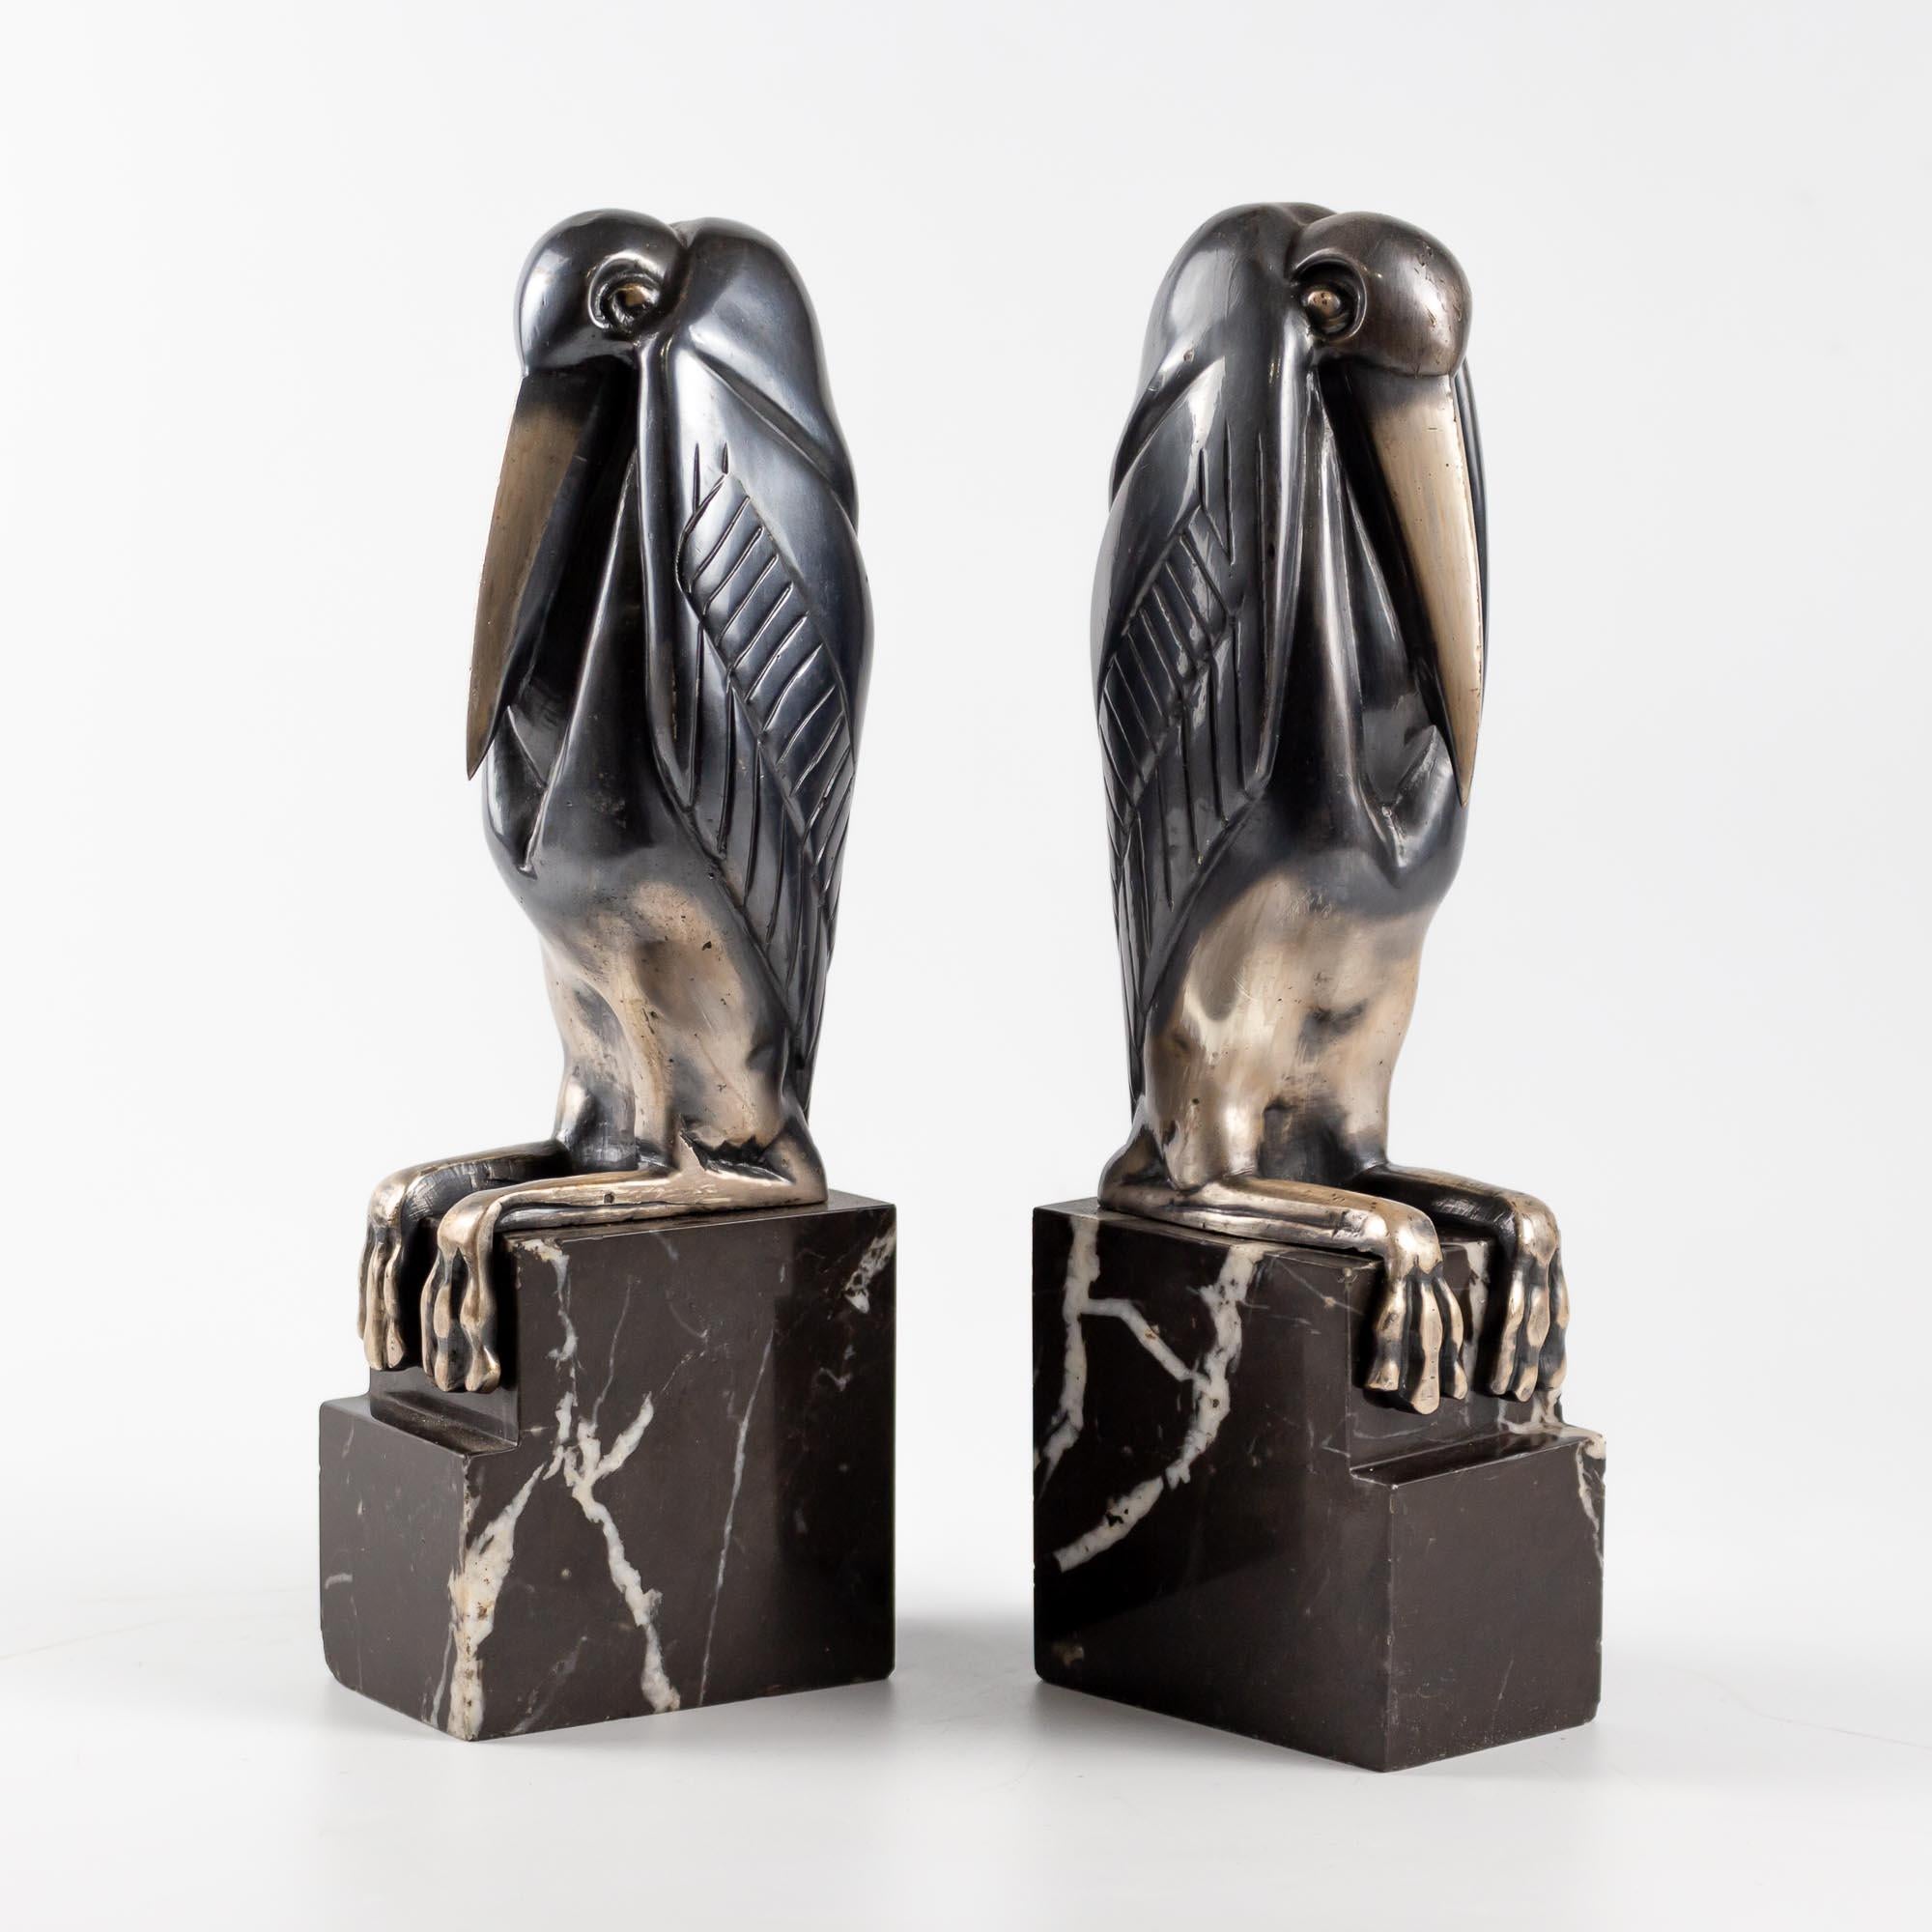 
Ein Paar Art Deco versilberte und patinierte Bronze  Buchstützen von Marcel-Andre Bouraine, um 1930, modelliert als sitzende Marabu-Störche, auf gestuften Marmorsockeln, signiert  A.Bouraine